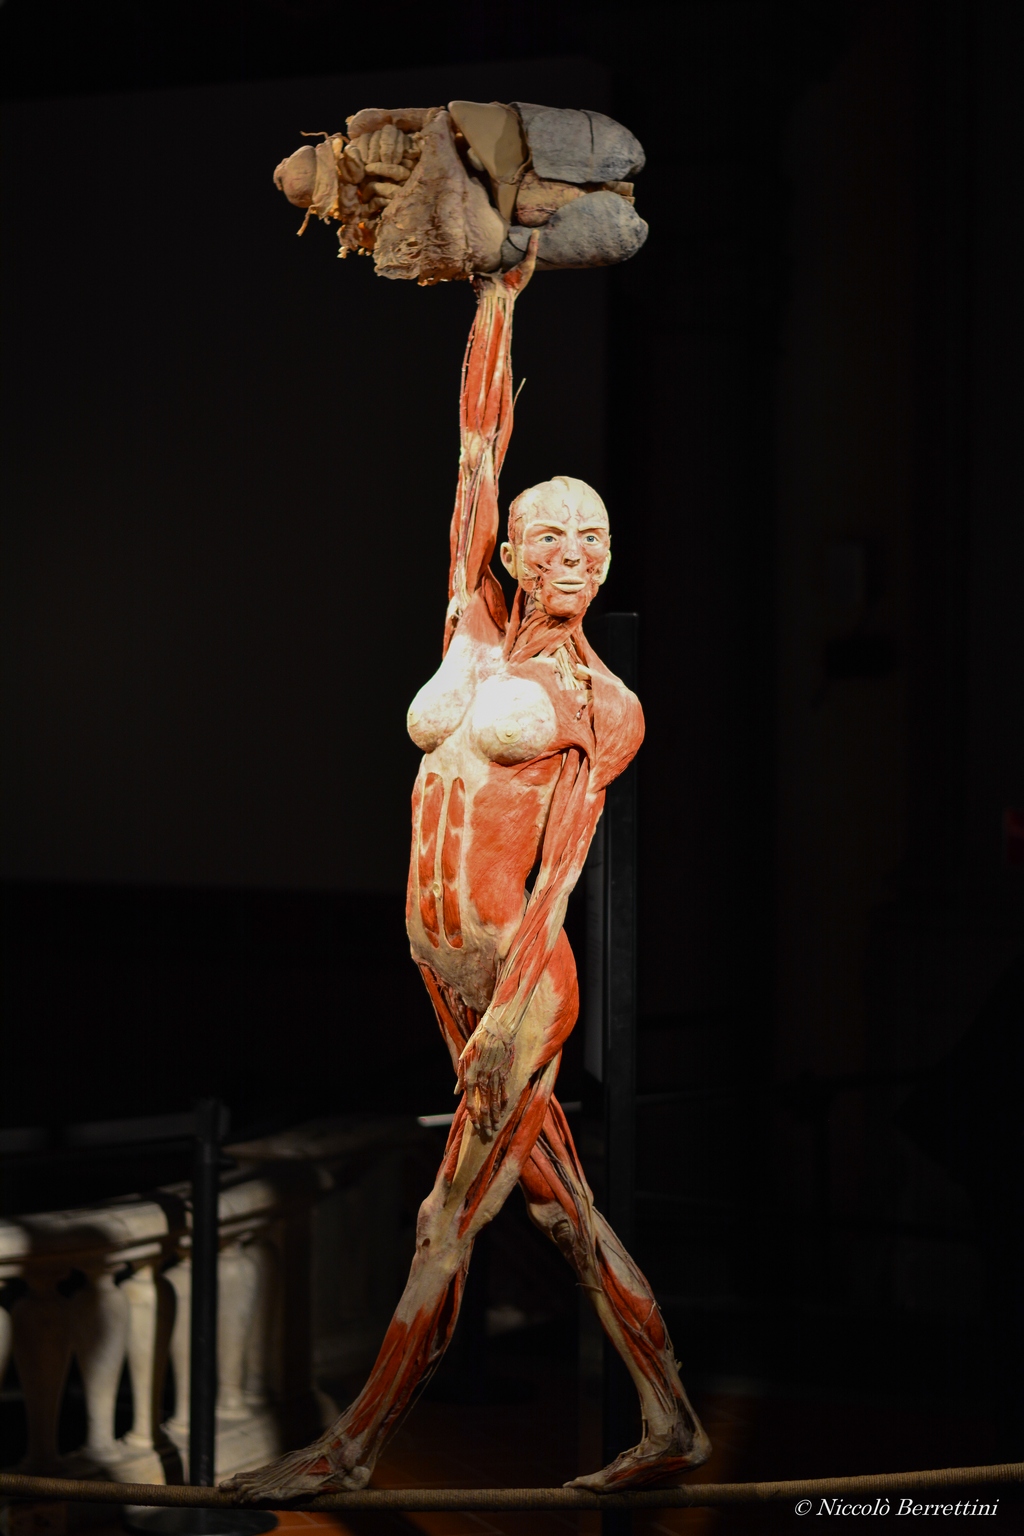 Body Worlds è la mostra di Gunther von Hagens che svela la complessità della vita. Questa edizione, curata dalla Dr.ssa Angelina Whalley, sarà a Firenze fino al 20 marzo 2016.